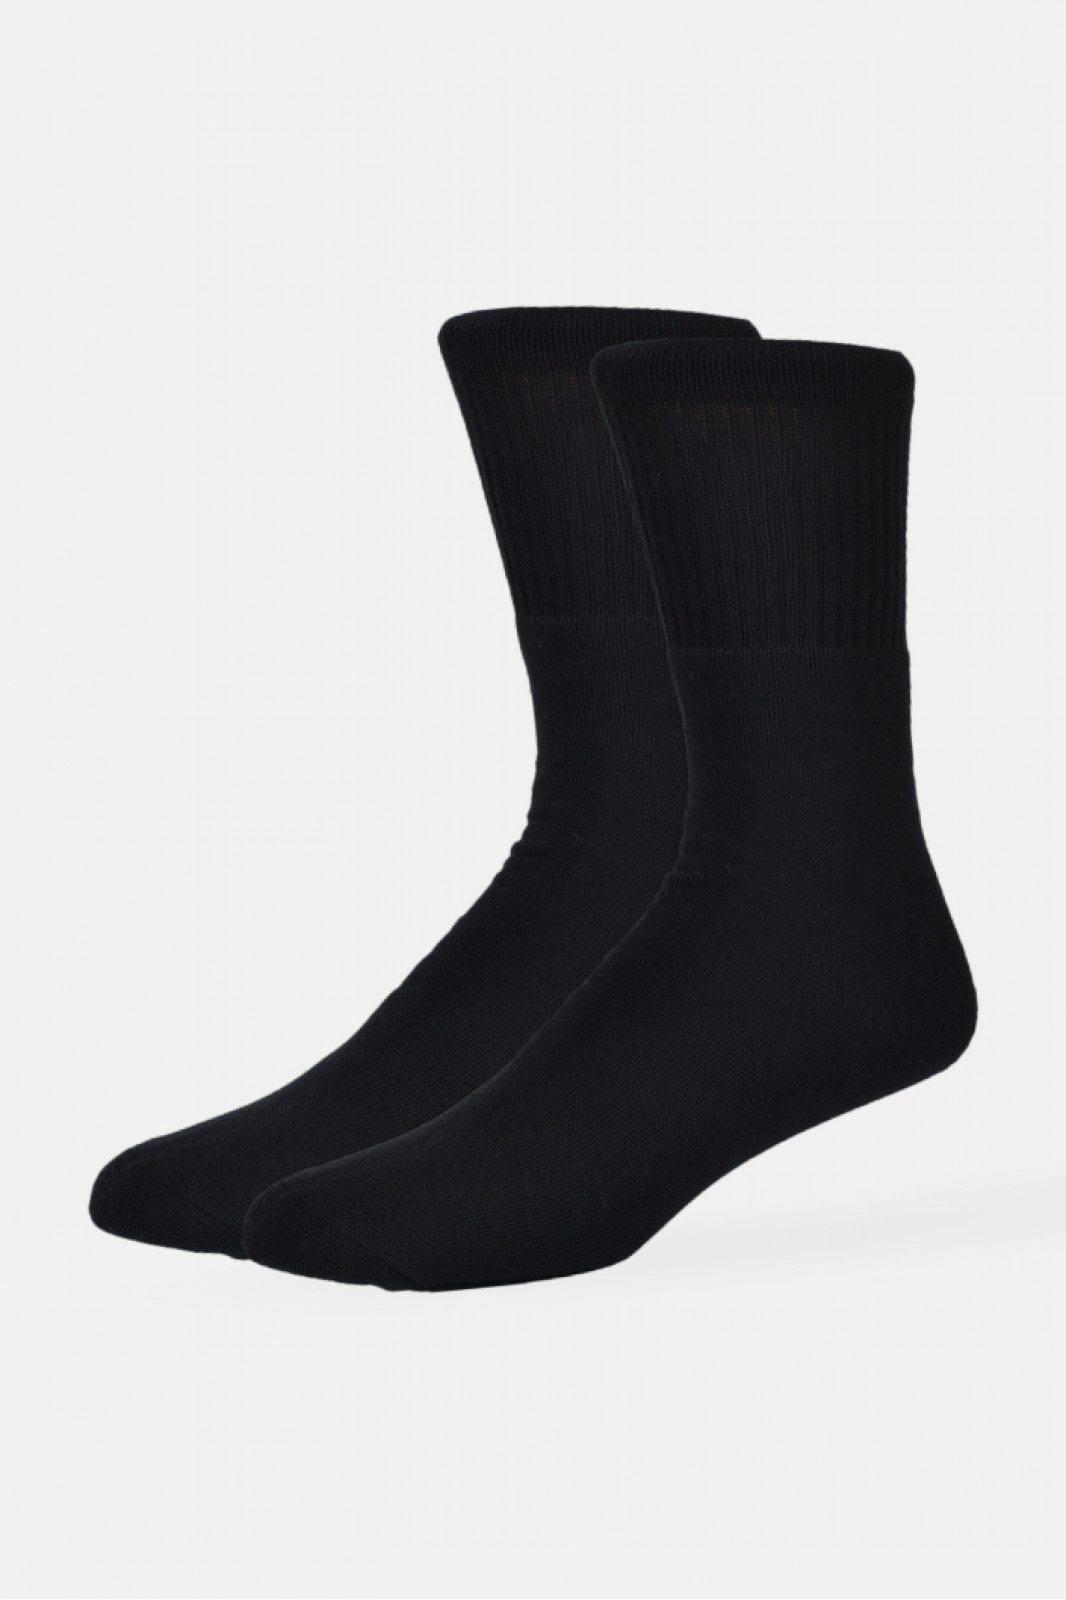 Einfarbige Socken in schwarz und weiß AMPO